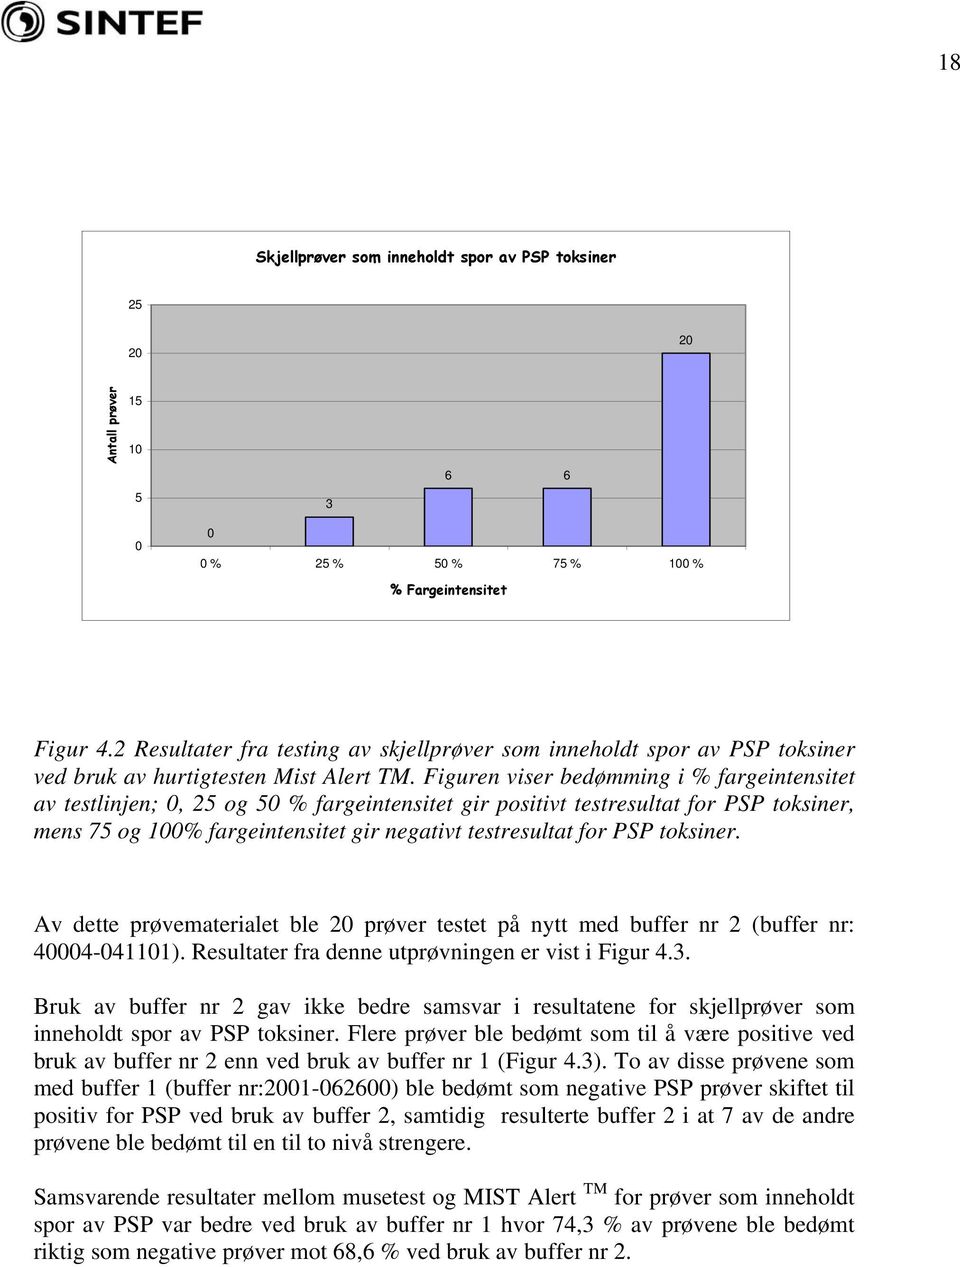 Figuren viser bedømming i % fargeintensitet av testlinjen;, 5 og 5 % fargeintensitet gir positivt testresultat for PSP toksiner, mens 75 og 1% fargeintensitet gir negativt testresultat for PSP